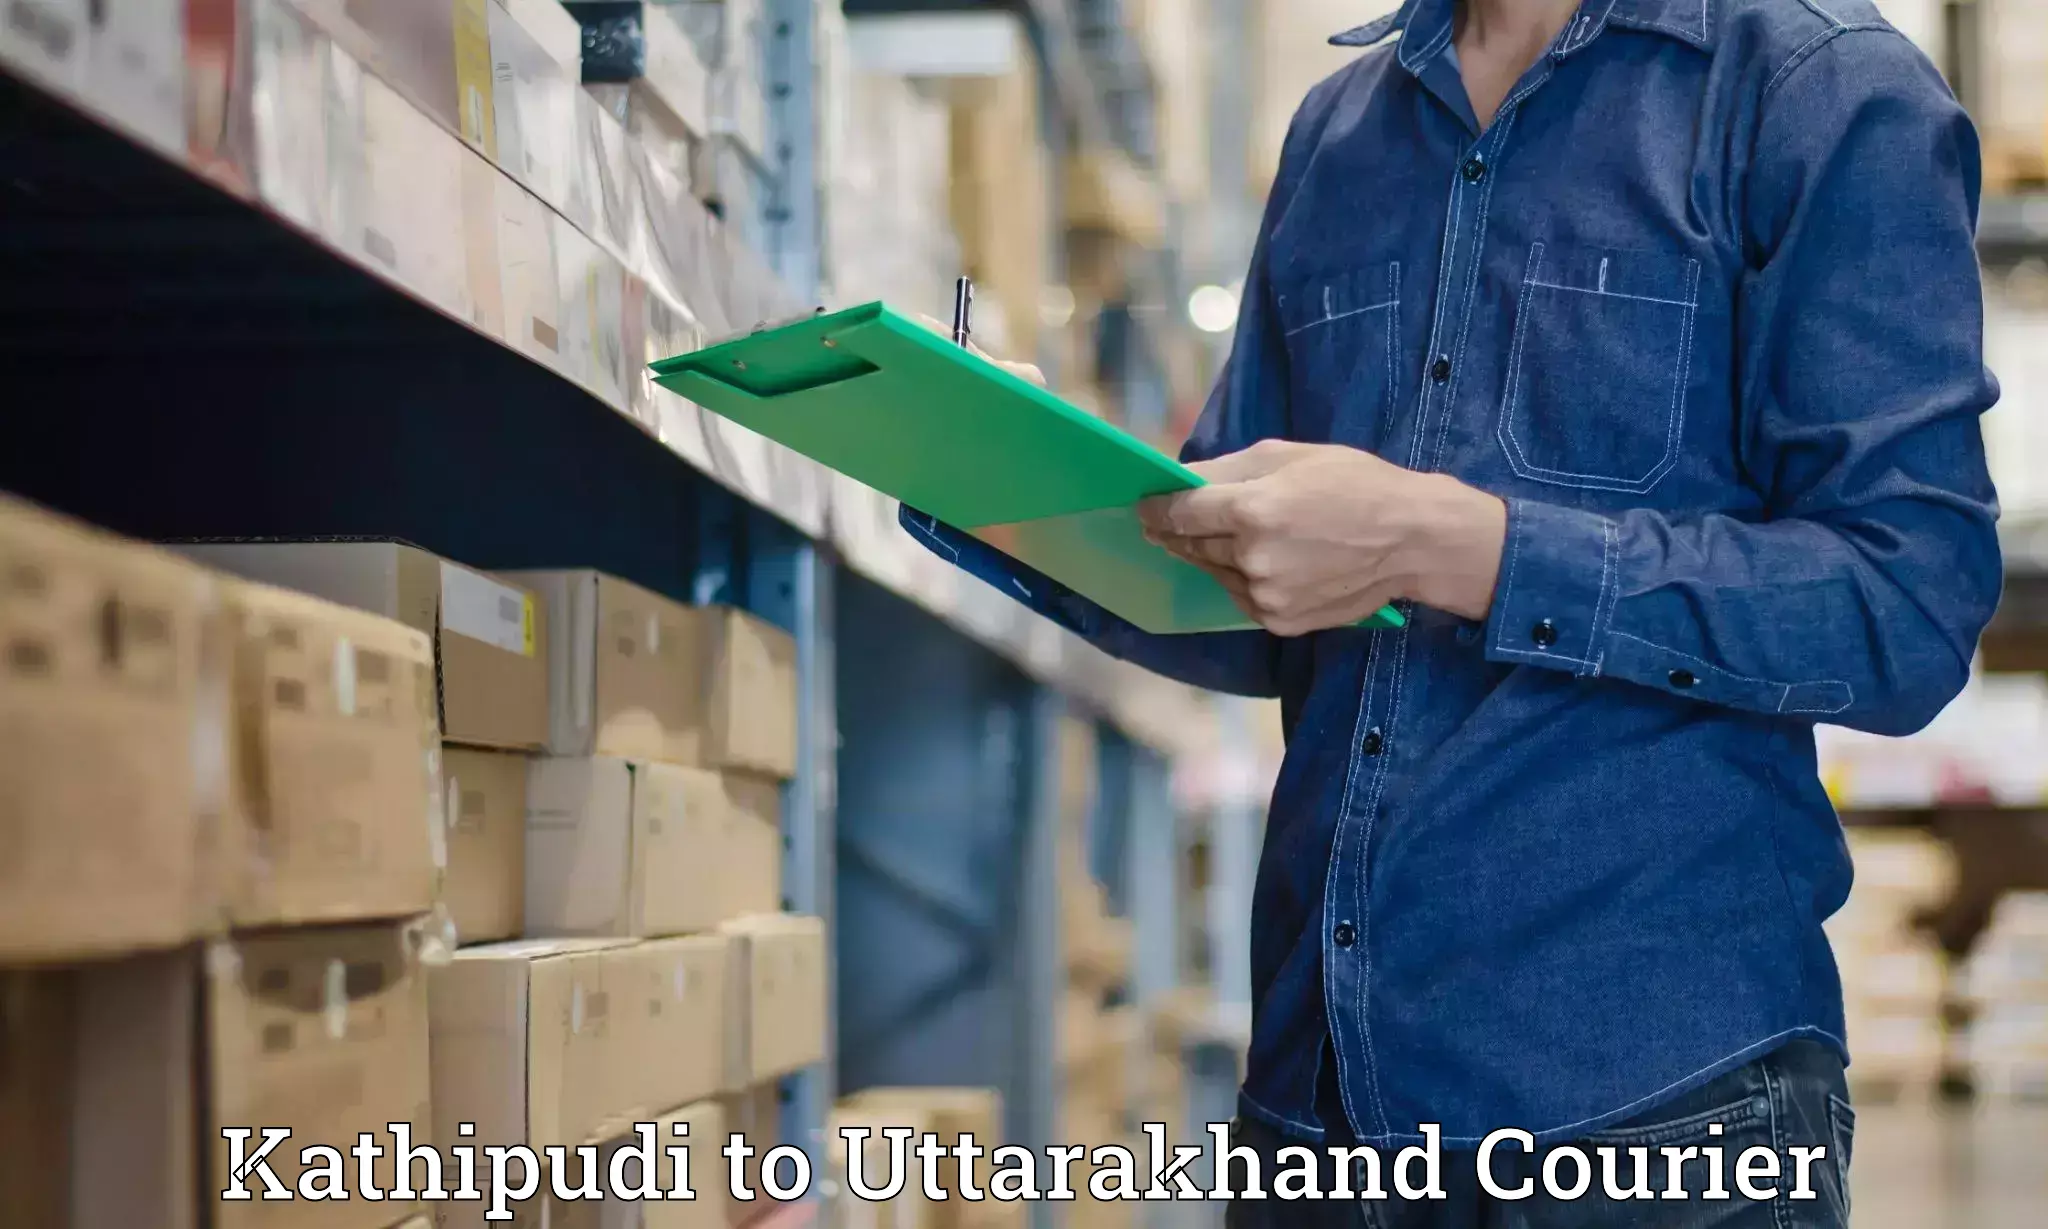 Automated parcel services Kathipudi to Uttarakhand